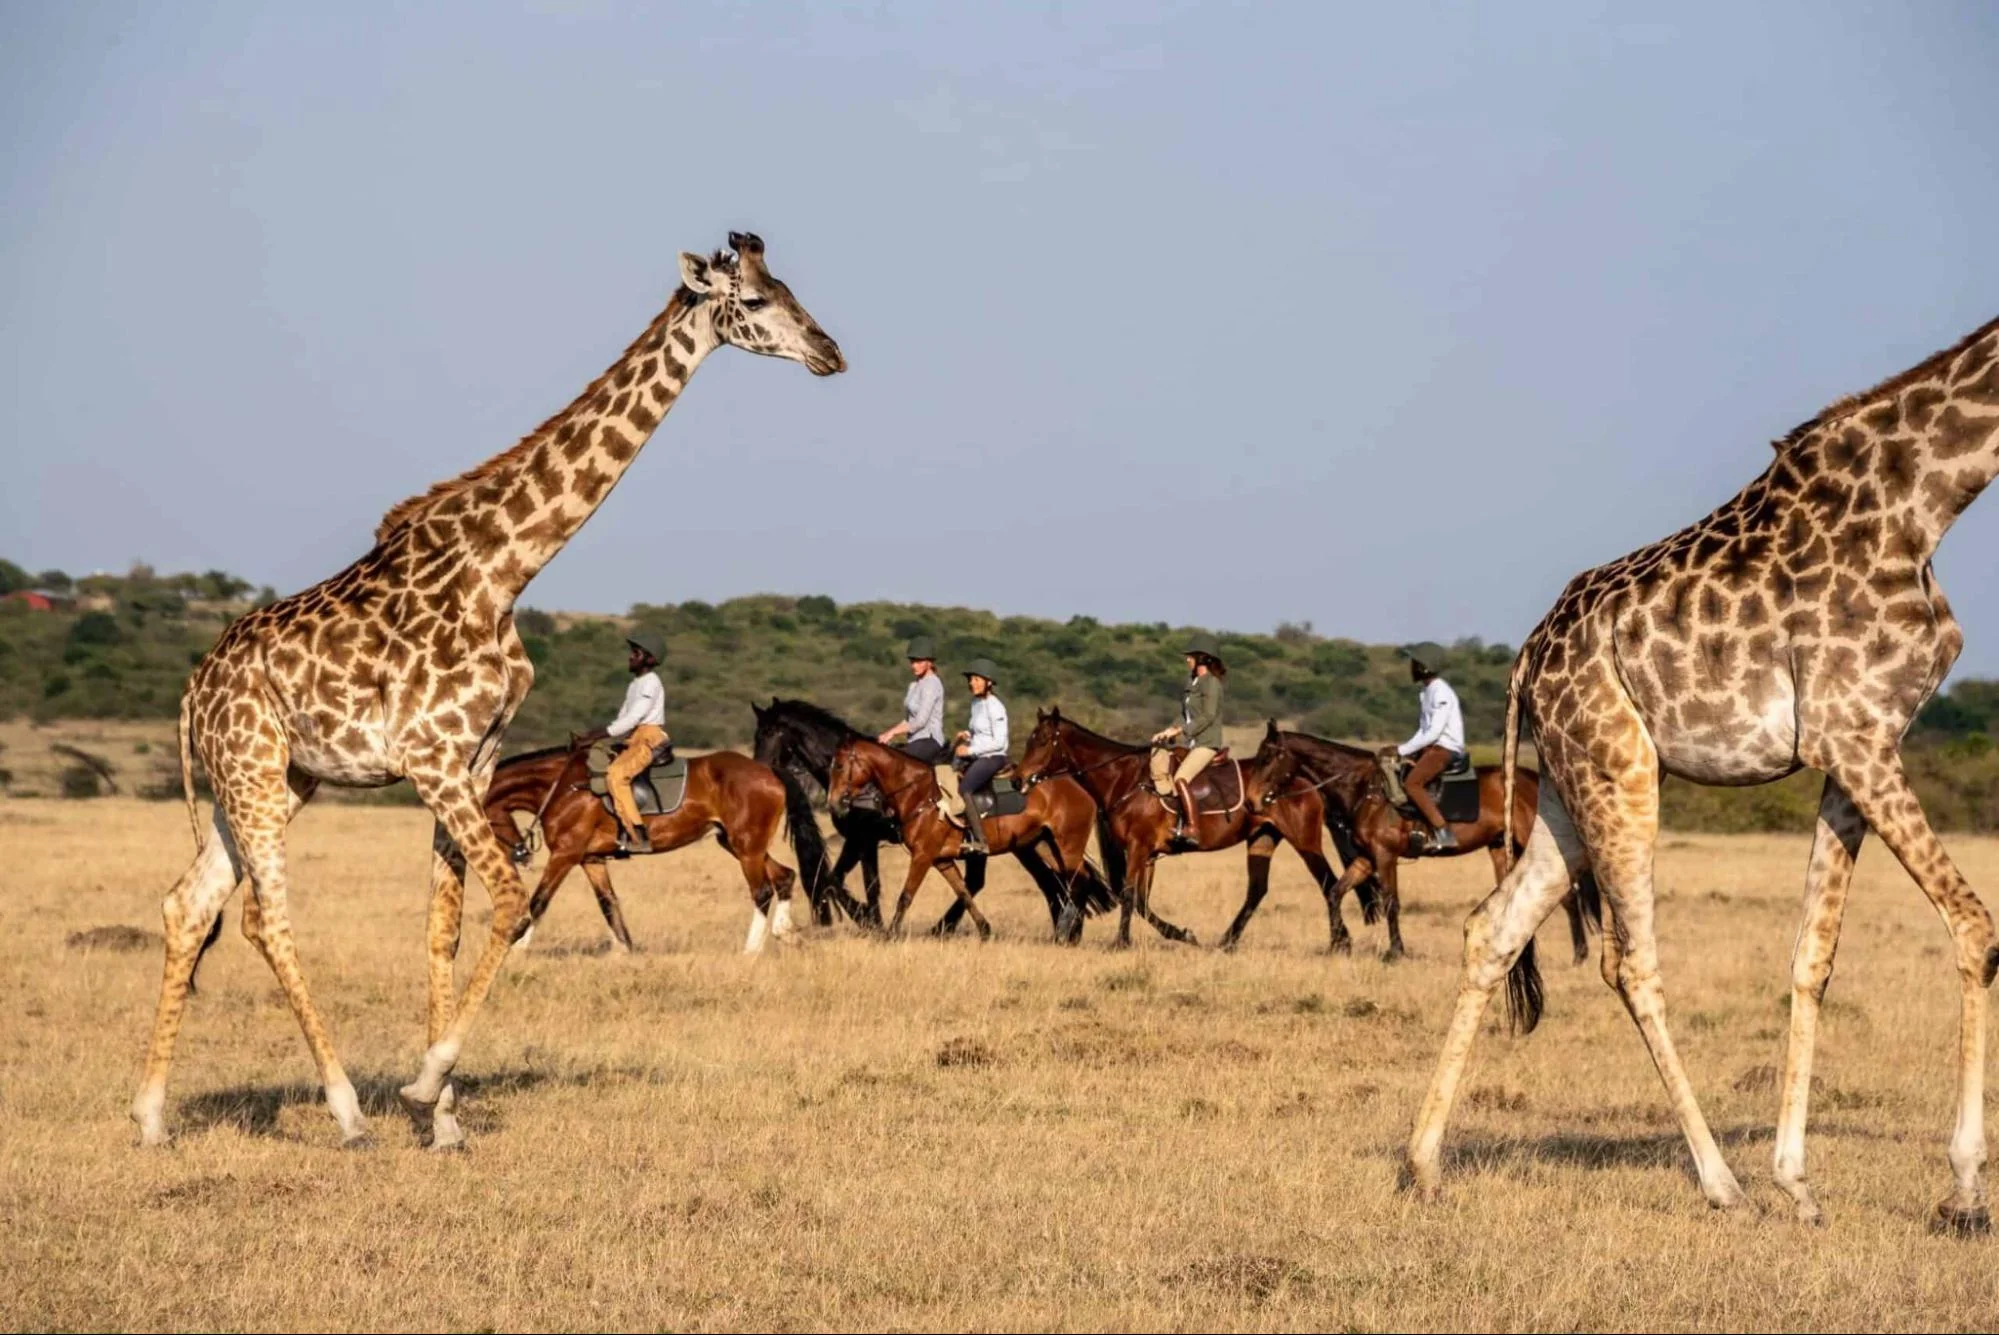 Kenya safari august - guests on a horseback riding safari in Kenya